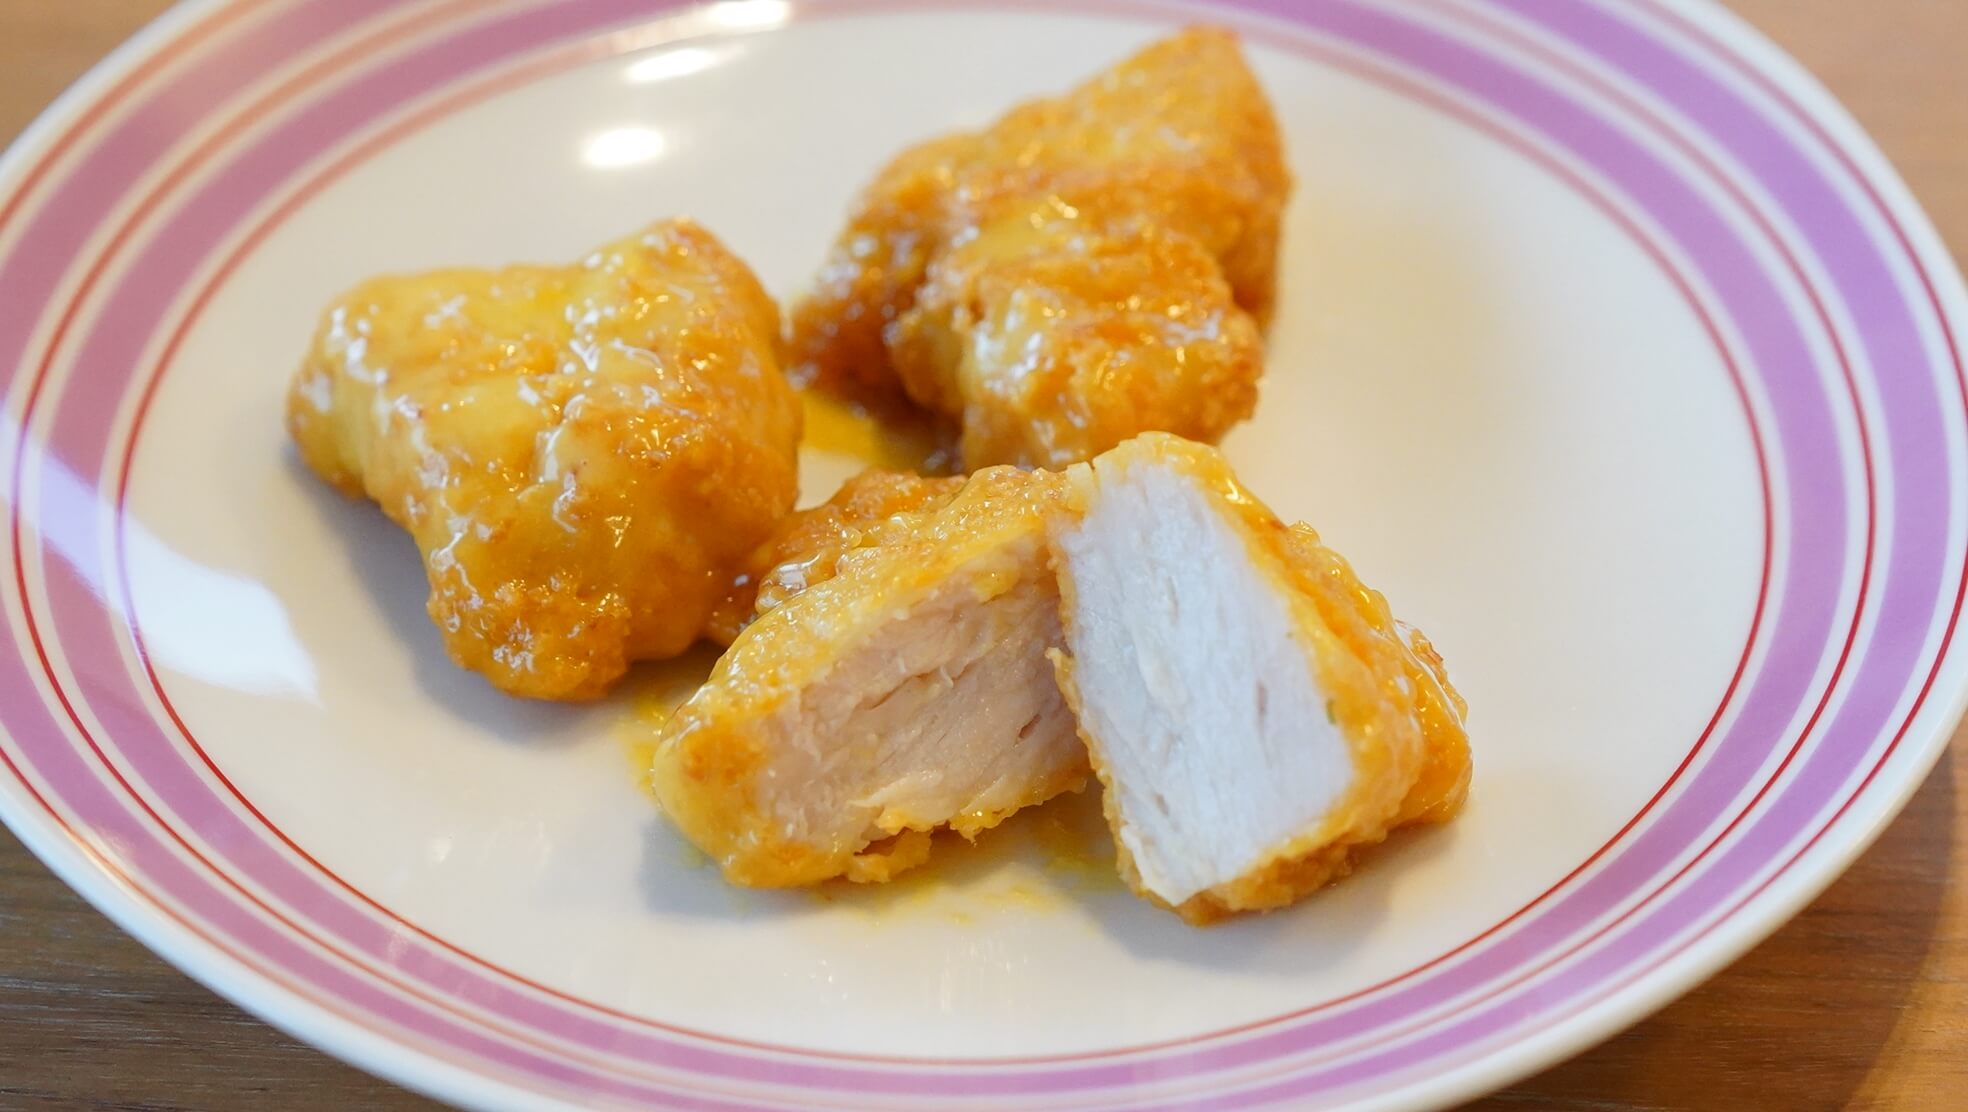 大阪ABCテレビ「CAST（キャスト）」に冷凍食品ドットコム「ノビ」が出演して紹介した冷食、ニチレイ「ハニーマスタードチキン」の断面の写真